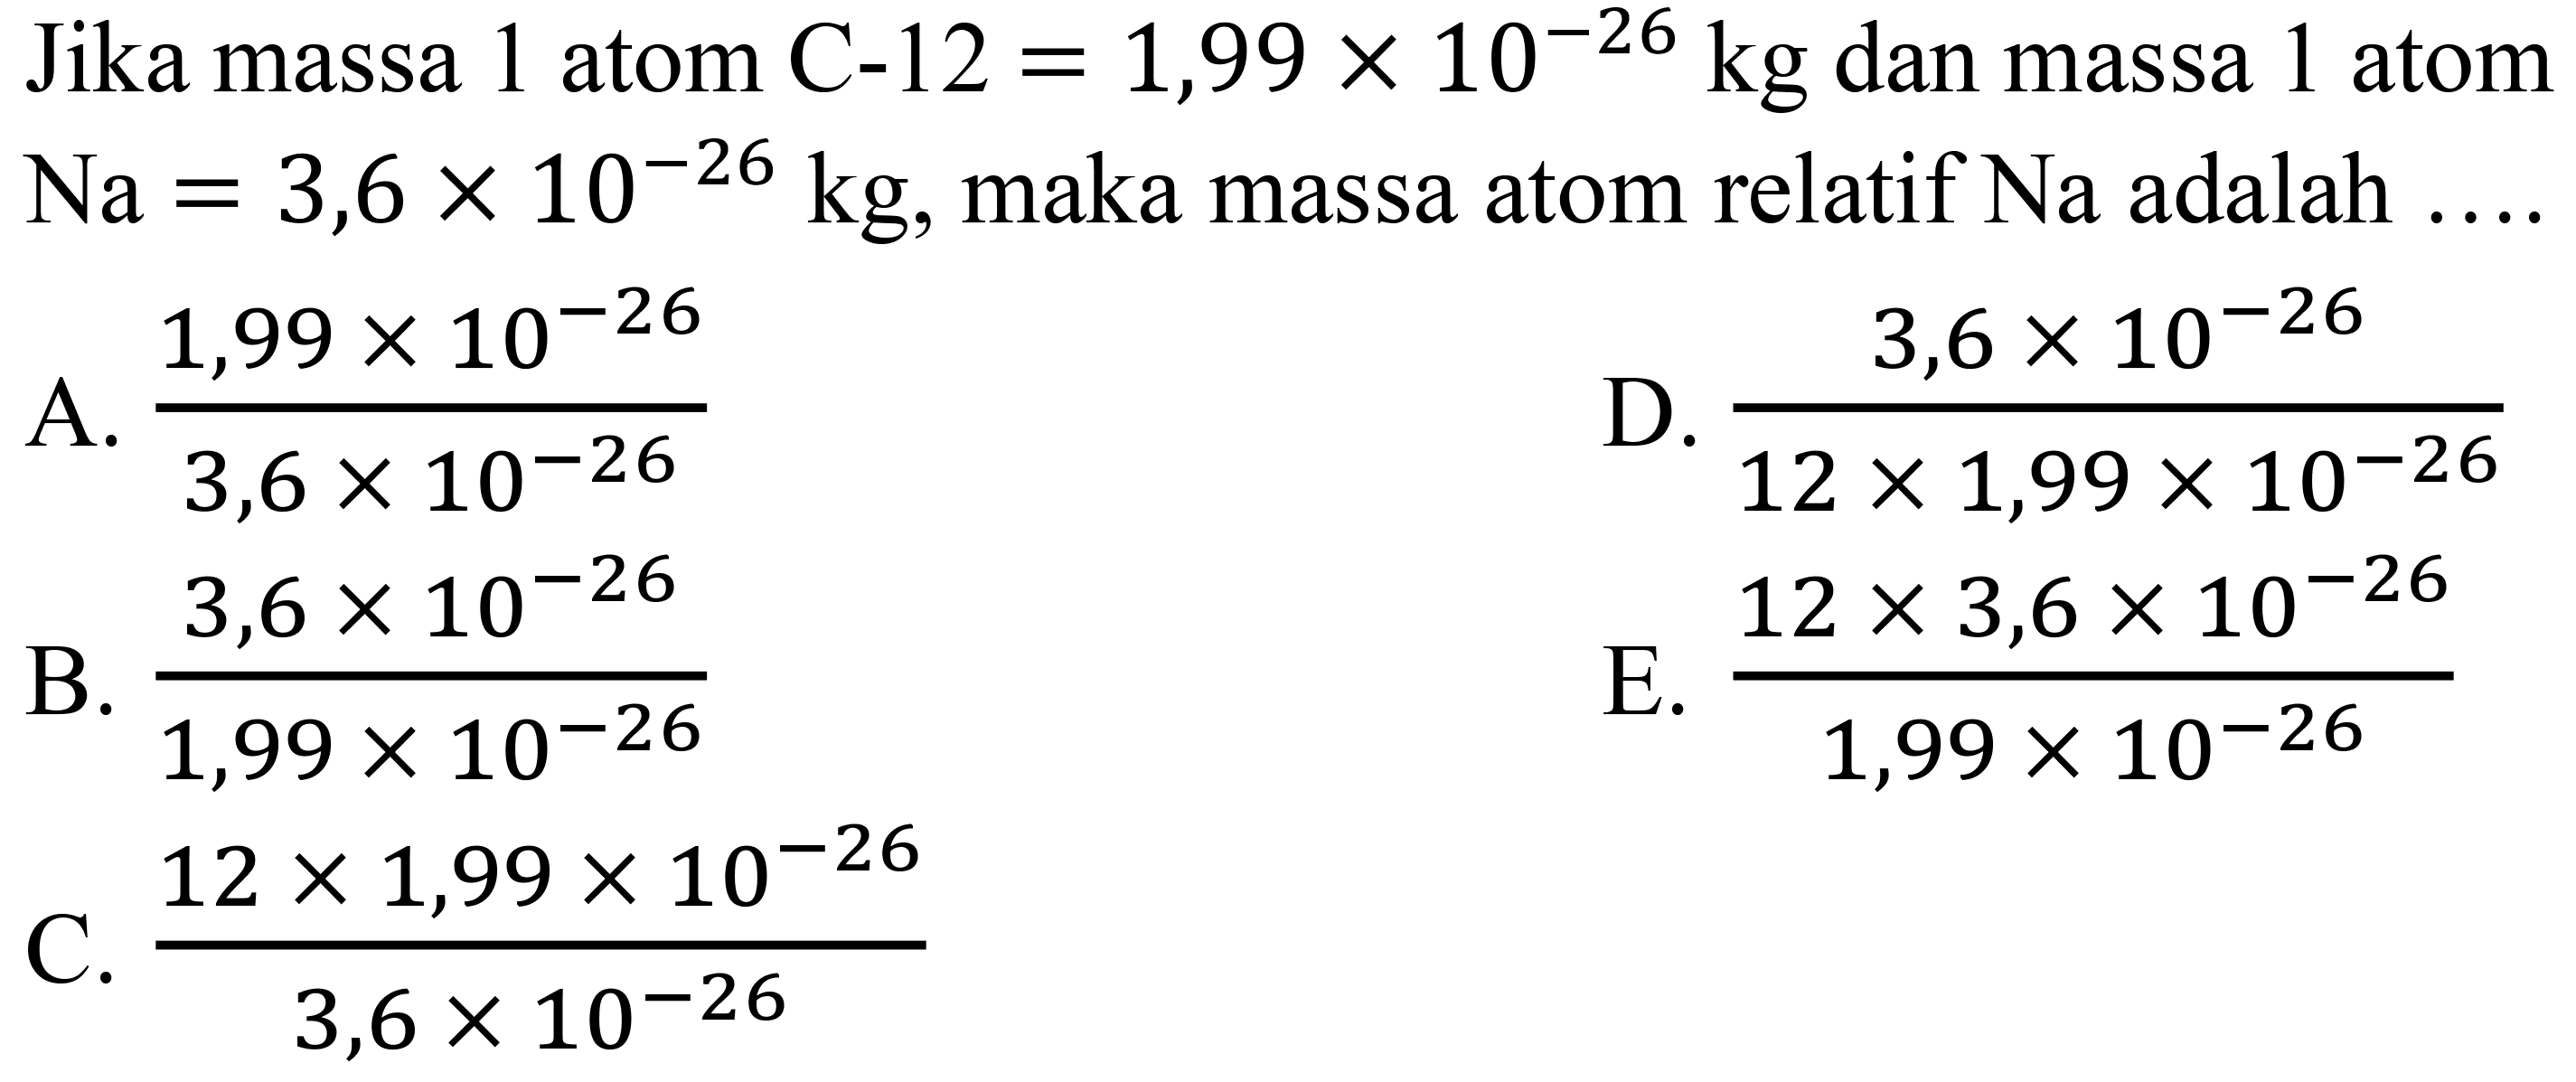 Jika massa 1 atom C-12  =1,99 x 10^(-26) kg  dan massa 1 atom  Na=3,6 x 10^(-26) kg , maka massa atom relatif  Na  adalah  ... . 
A.  (1,99 x 10^(-26))/(3,6 x 10^(-26)) 
D.  (3,6 x 10^(-26))/(12 x 1,99 x 10^(-26)) 
B.  (3,6 x 10^(-26))/(1,99 x 10^(-26)) 
E.  (12 x 3,6 x 10^(-26))/(1,99 x 10^(-26)) 
C.  (12 x 1,99 x 10^(-26))/(3,6 x 10^(-26)) 